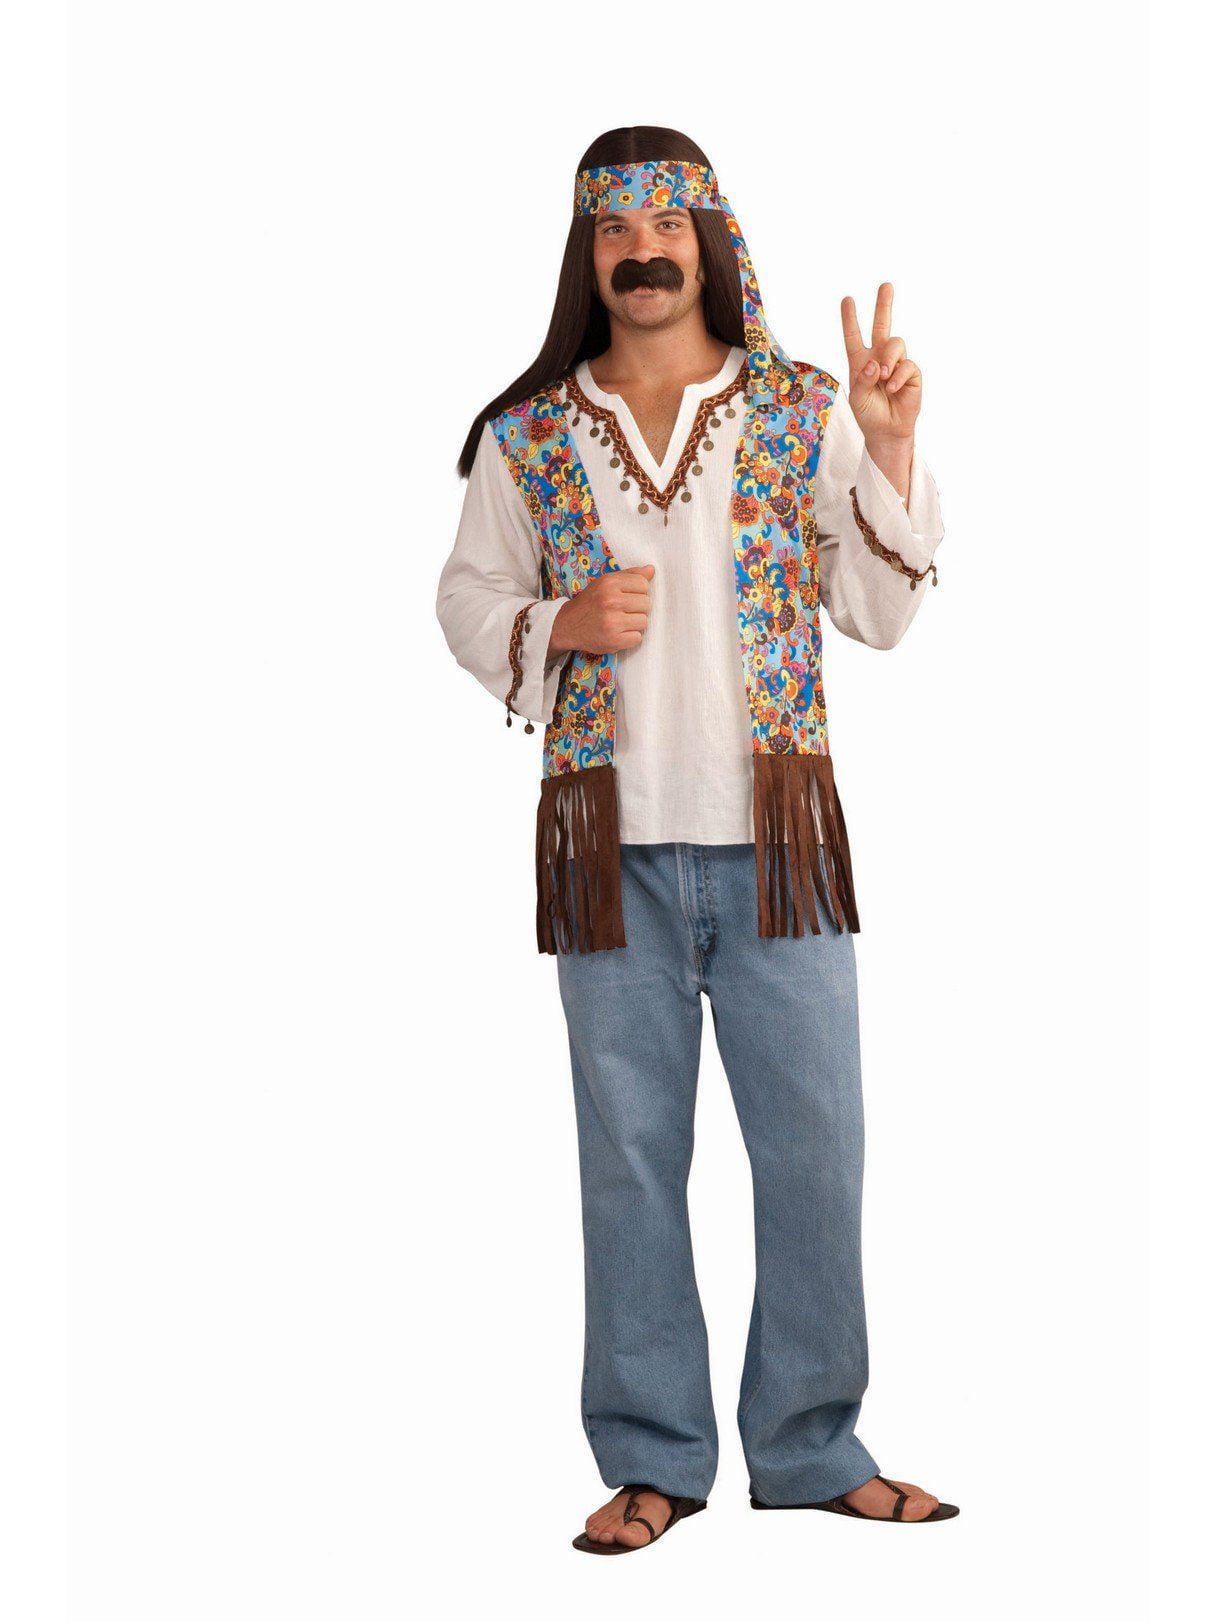 Verstrooien zonsondergang Opsplitsen Hippie Groovy Set - Male Adult Costume - Walmart.com